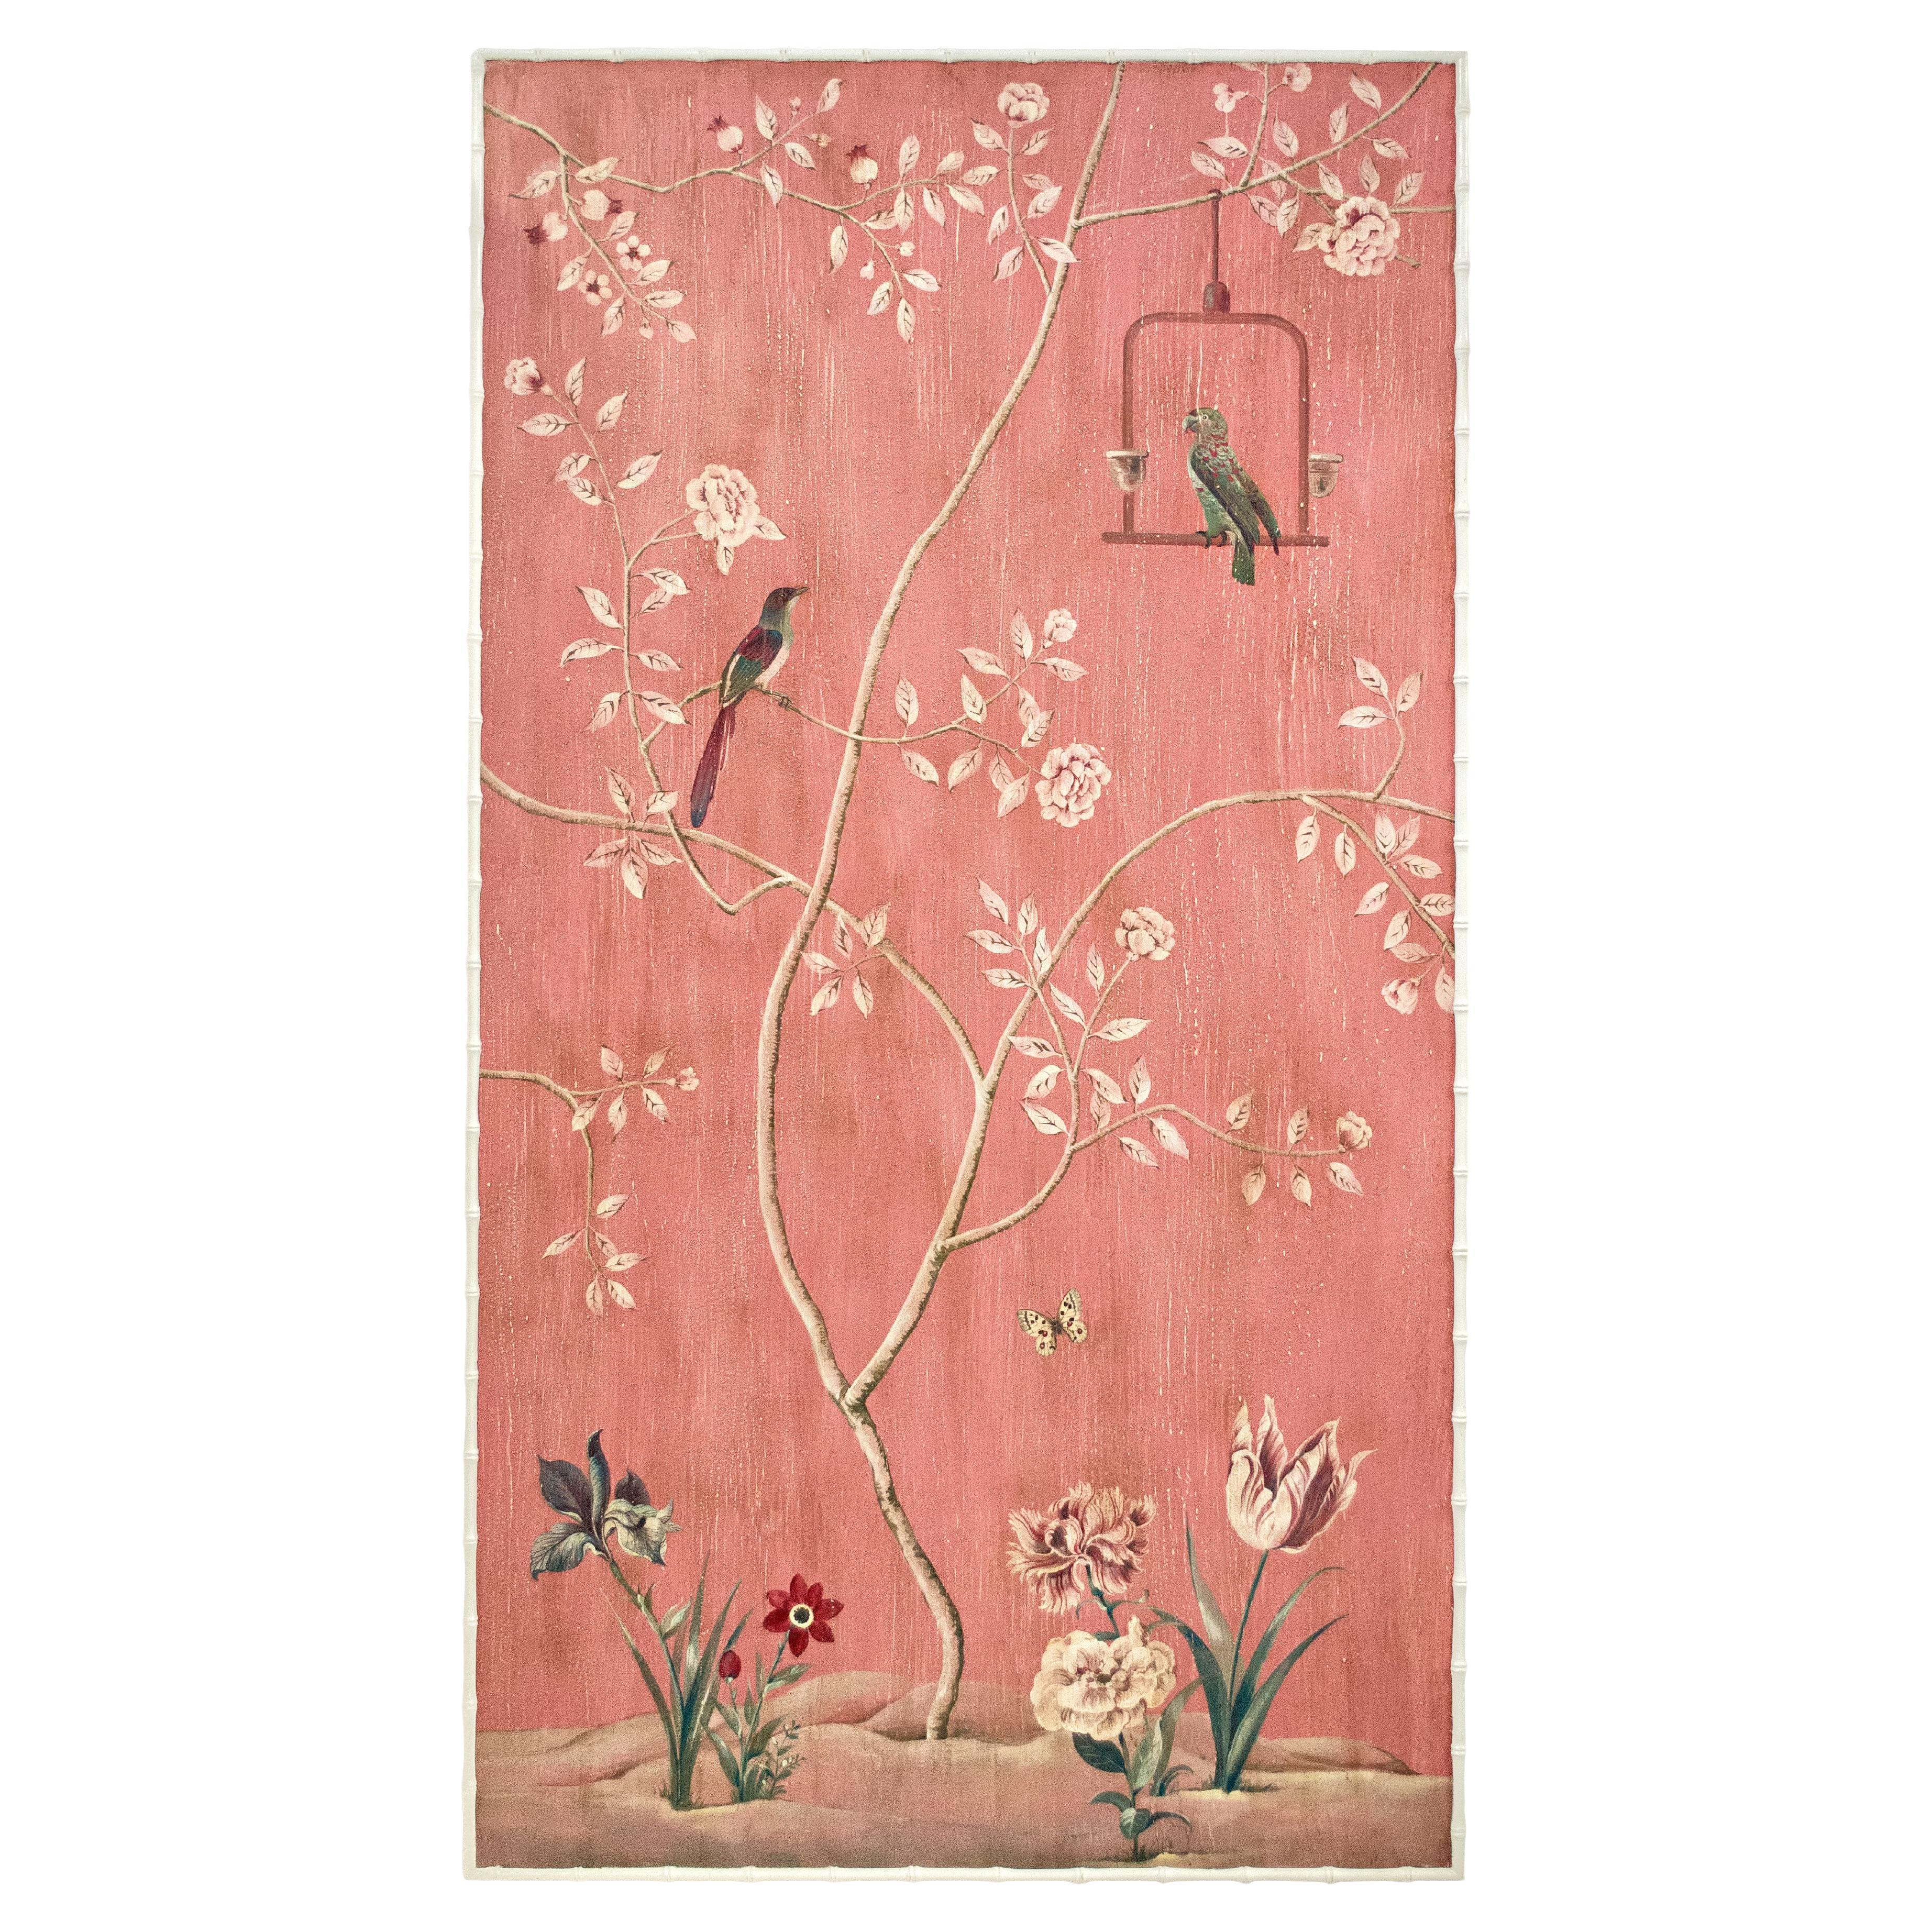 Handbemalte, dekorative Bellini-Deko-Tafel im venezianischen Stil des 18. Jahrhunderts mit Papageien